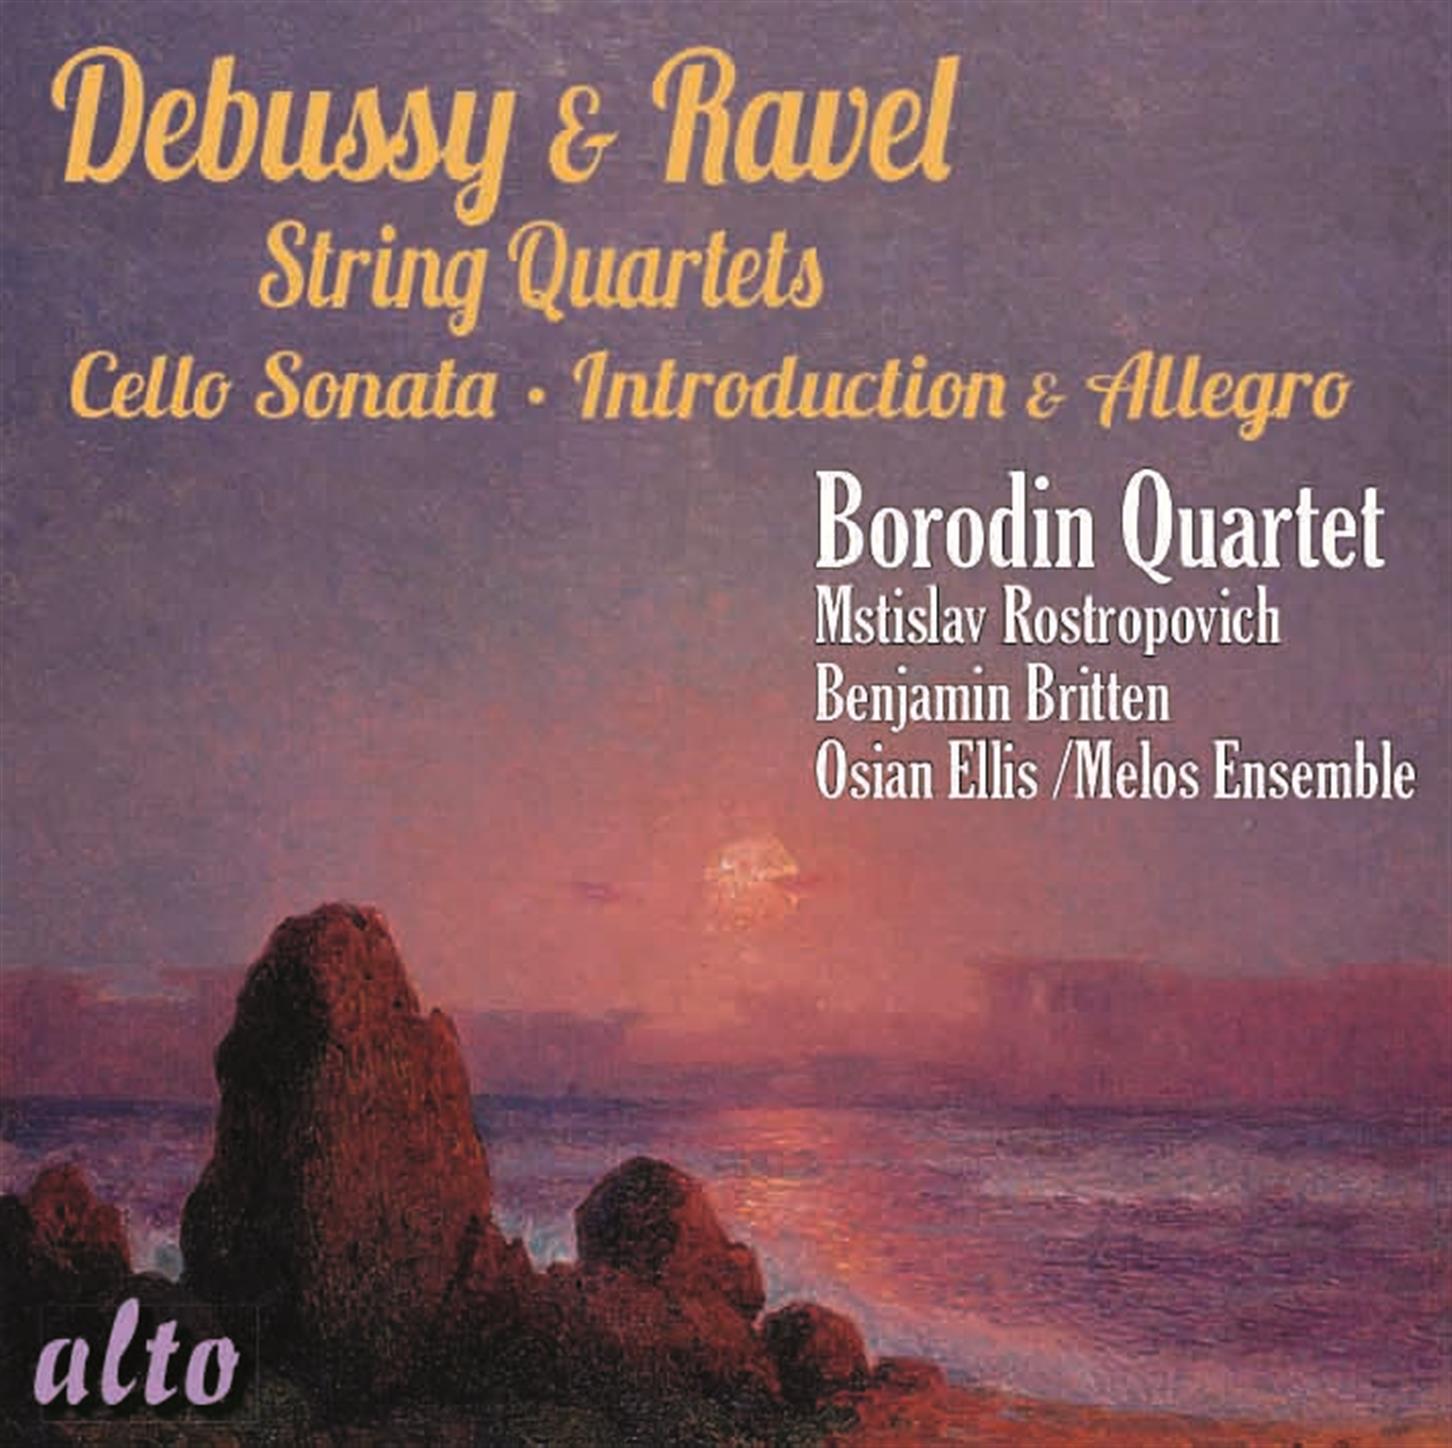 String Quartet in G Minor Op. 10: I. Anime et tre s de cide